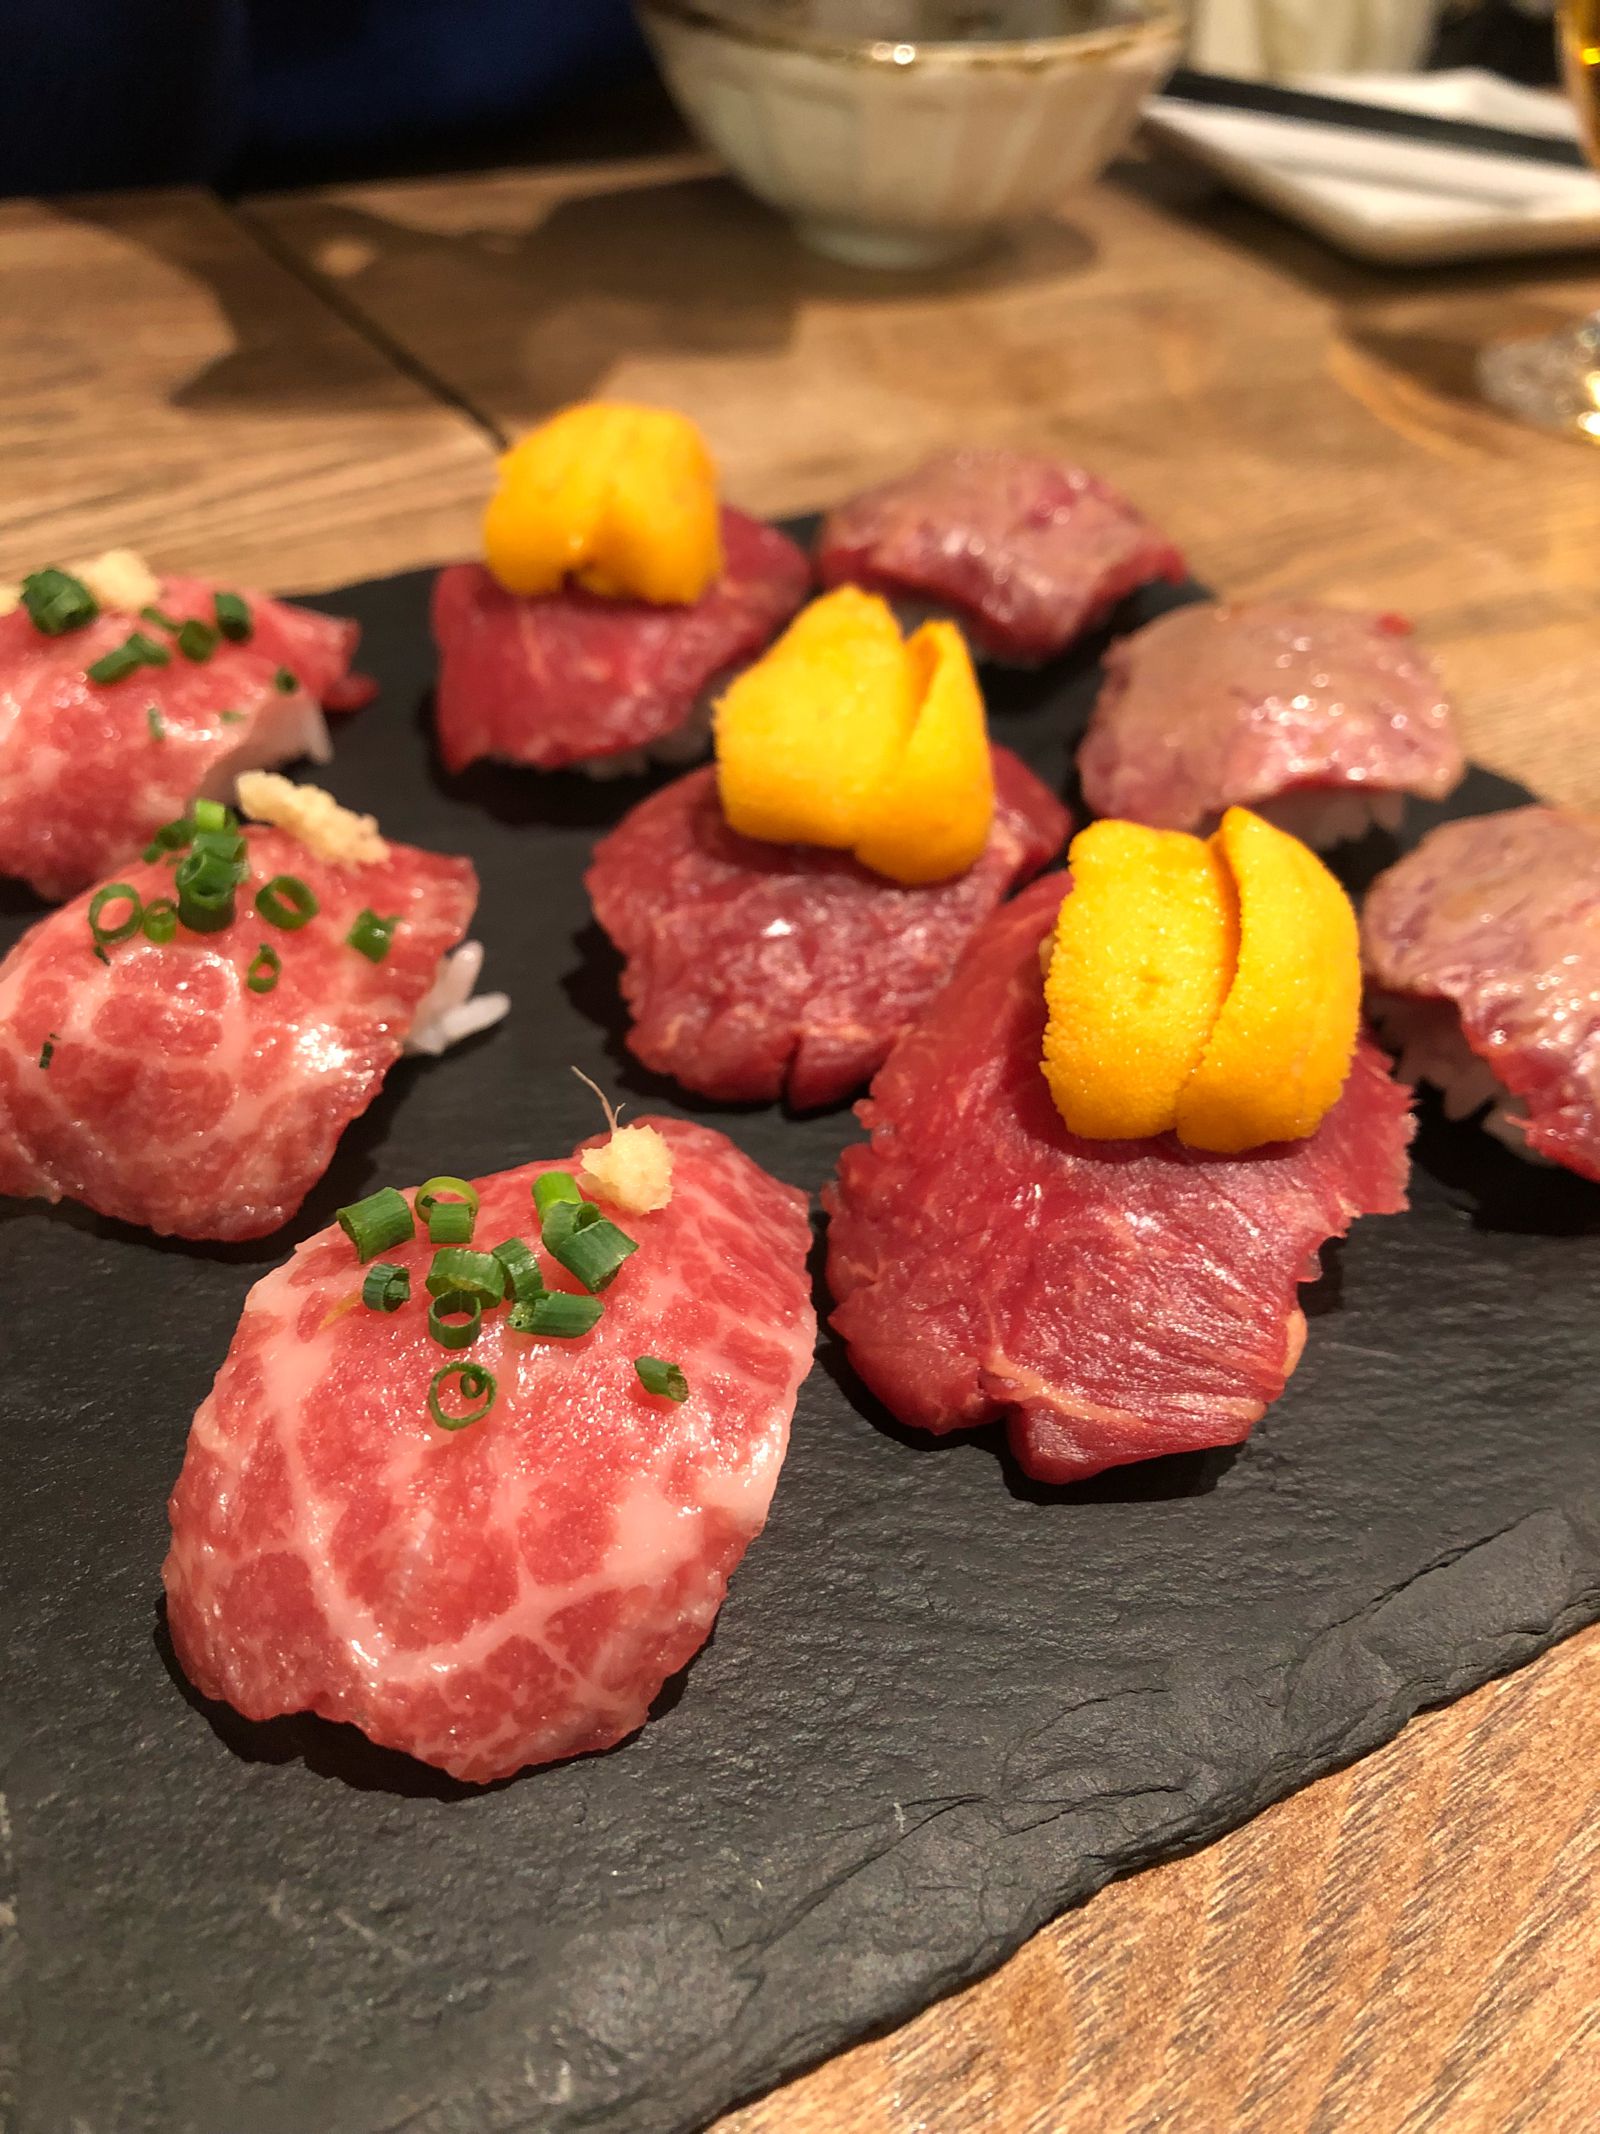 今夜はがっつりお肉デート 東京都内の雰囲気抜群のお肉料理店10選 Retrip リトリップ